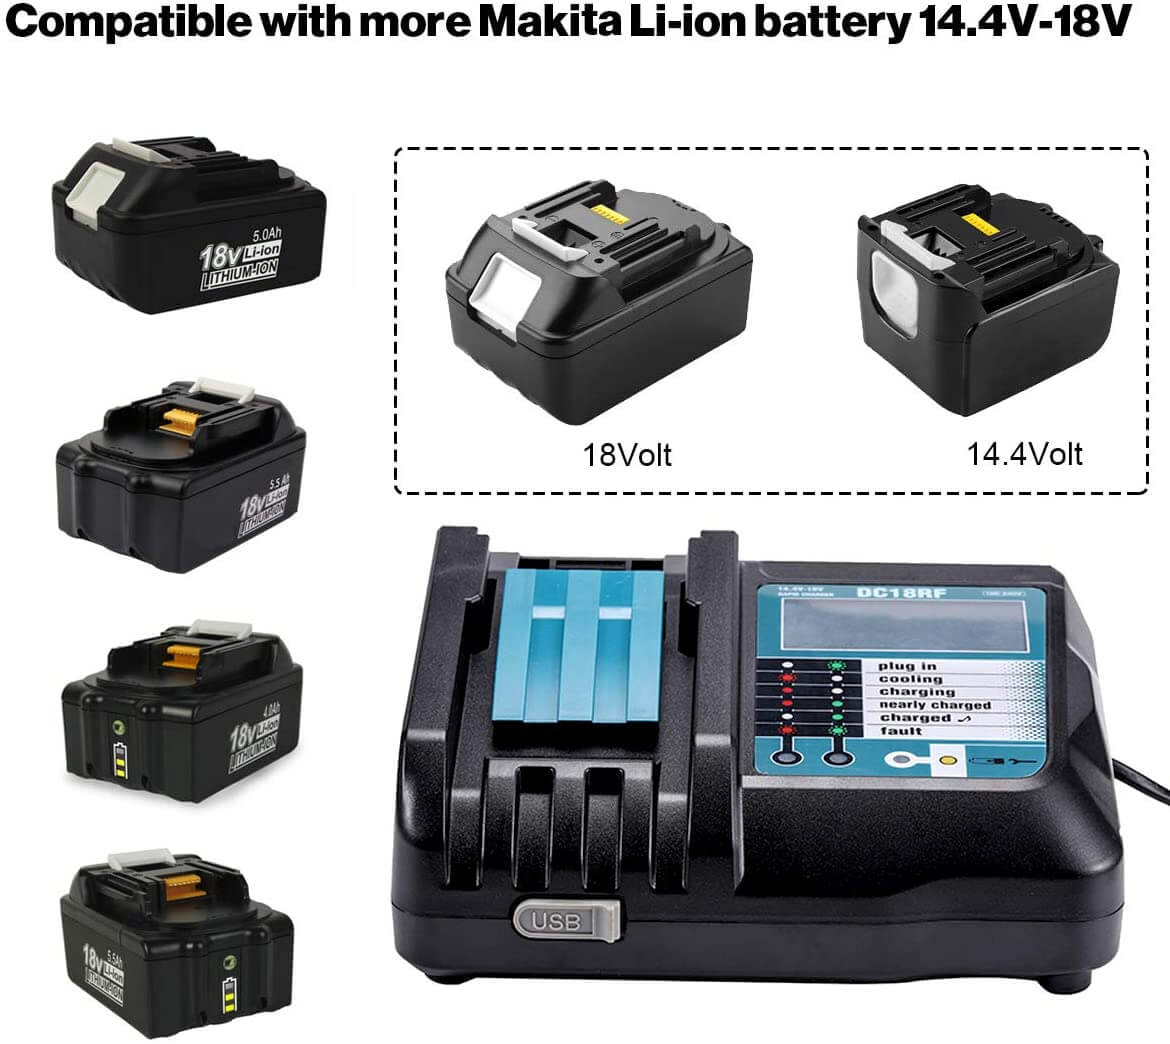 BL1850+DC18RF 3,5A Caricatore di sostituzione degli ioni di litio per Makita 14.4V-18 V Carichi di batteria